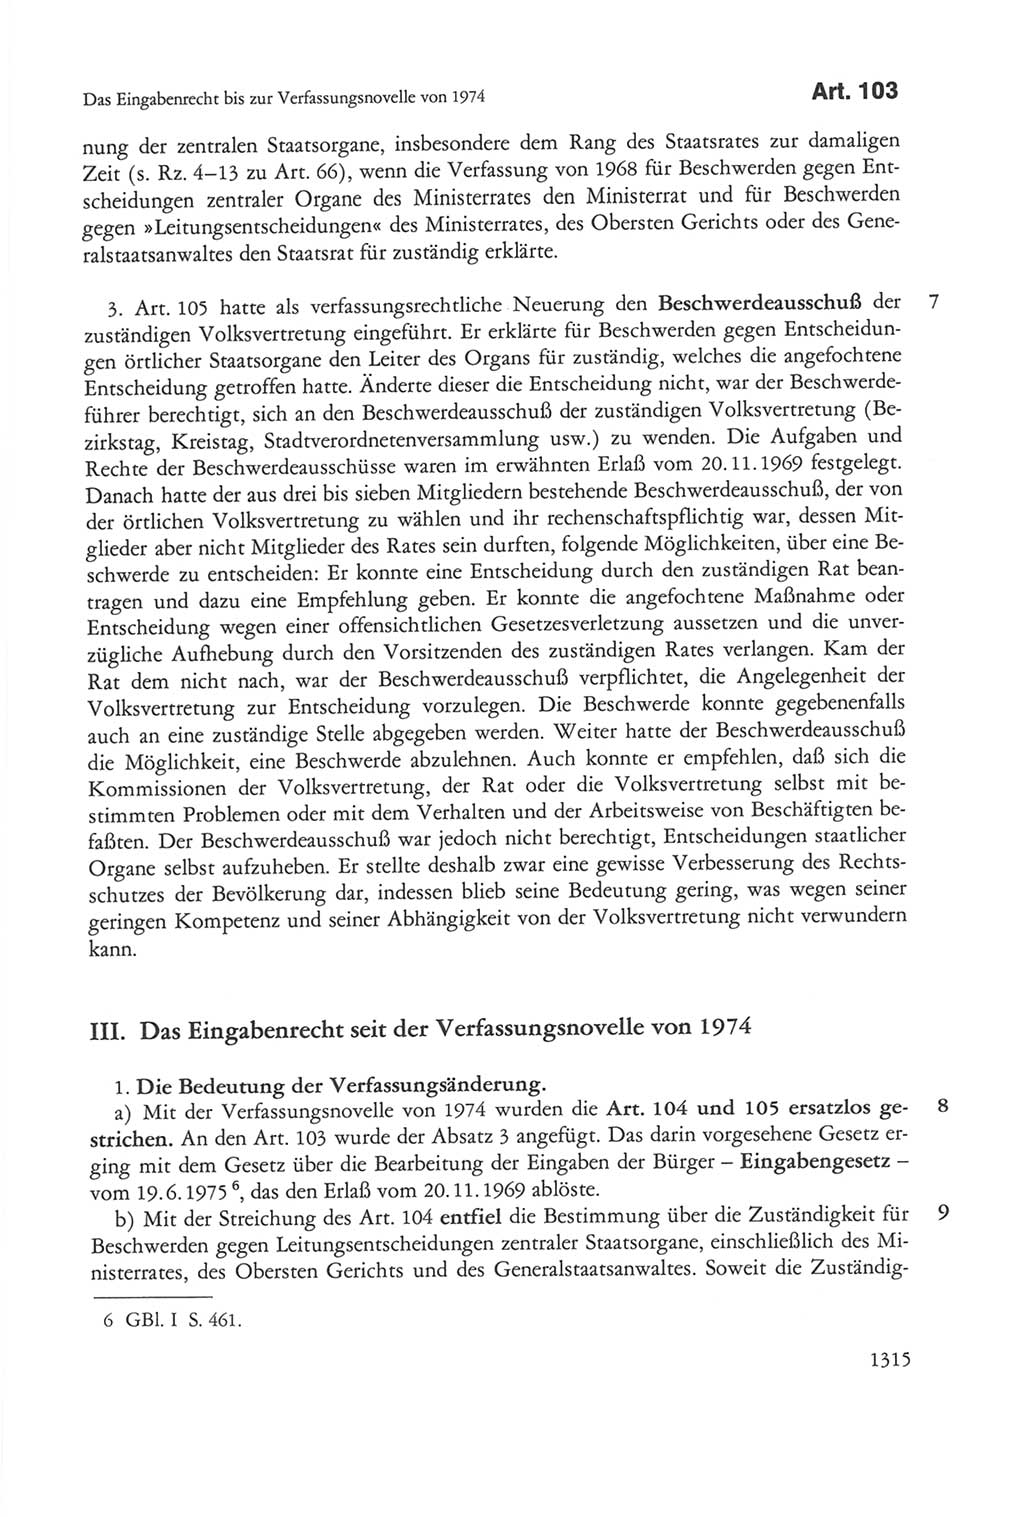 Die sozialistische Verfassung der Deutschen Demokratischen Republik (DDR), Kommentar mit einem Nachtrag 1997, Seite 1315 (Soz. Verf. DDR Komm. Nachtr. 1997, S. 1315)